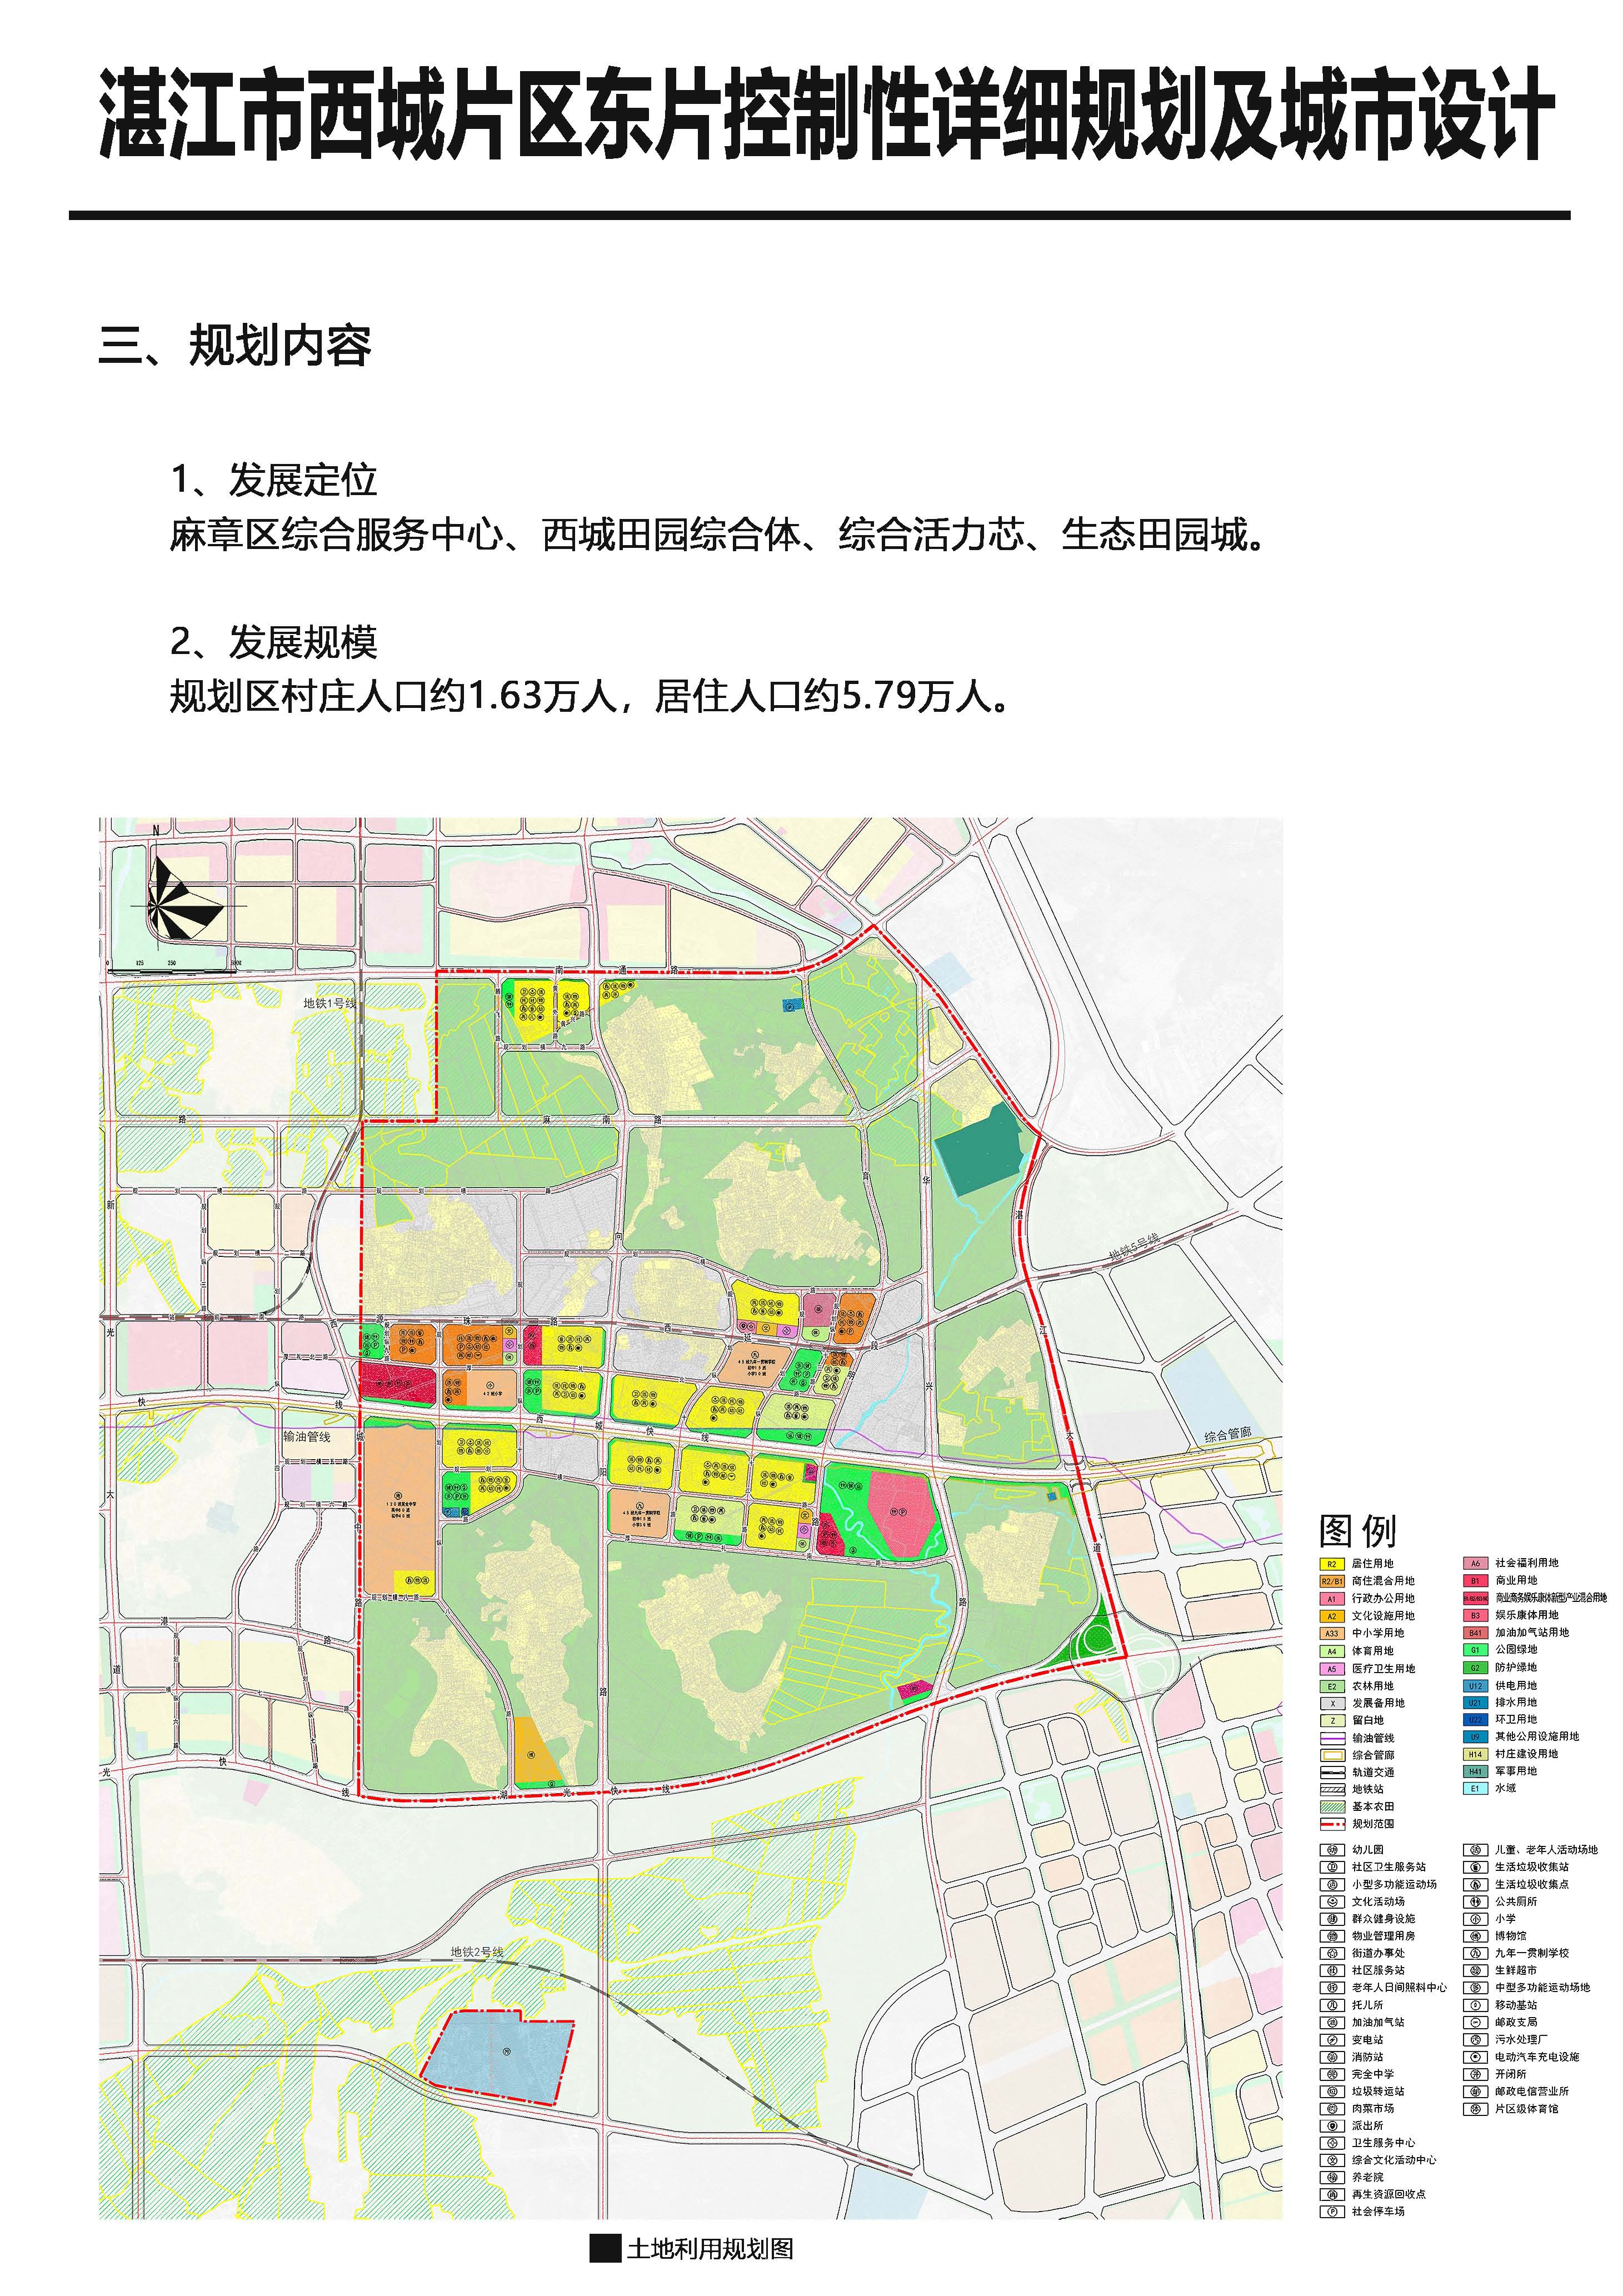 《湛江西城东片区控制性详细规划及城市设计》批后公告_页面_4.jpg